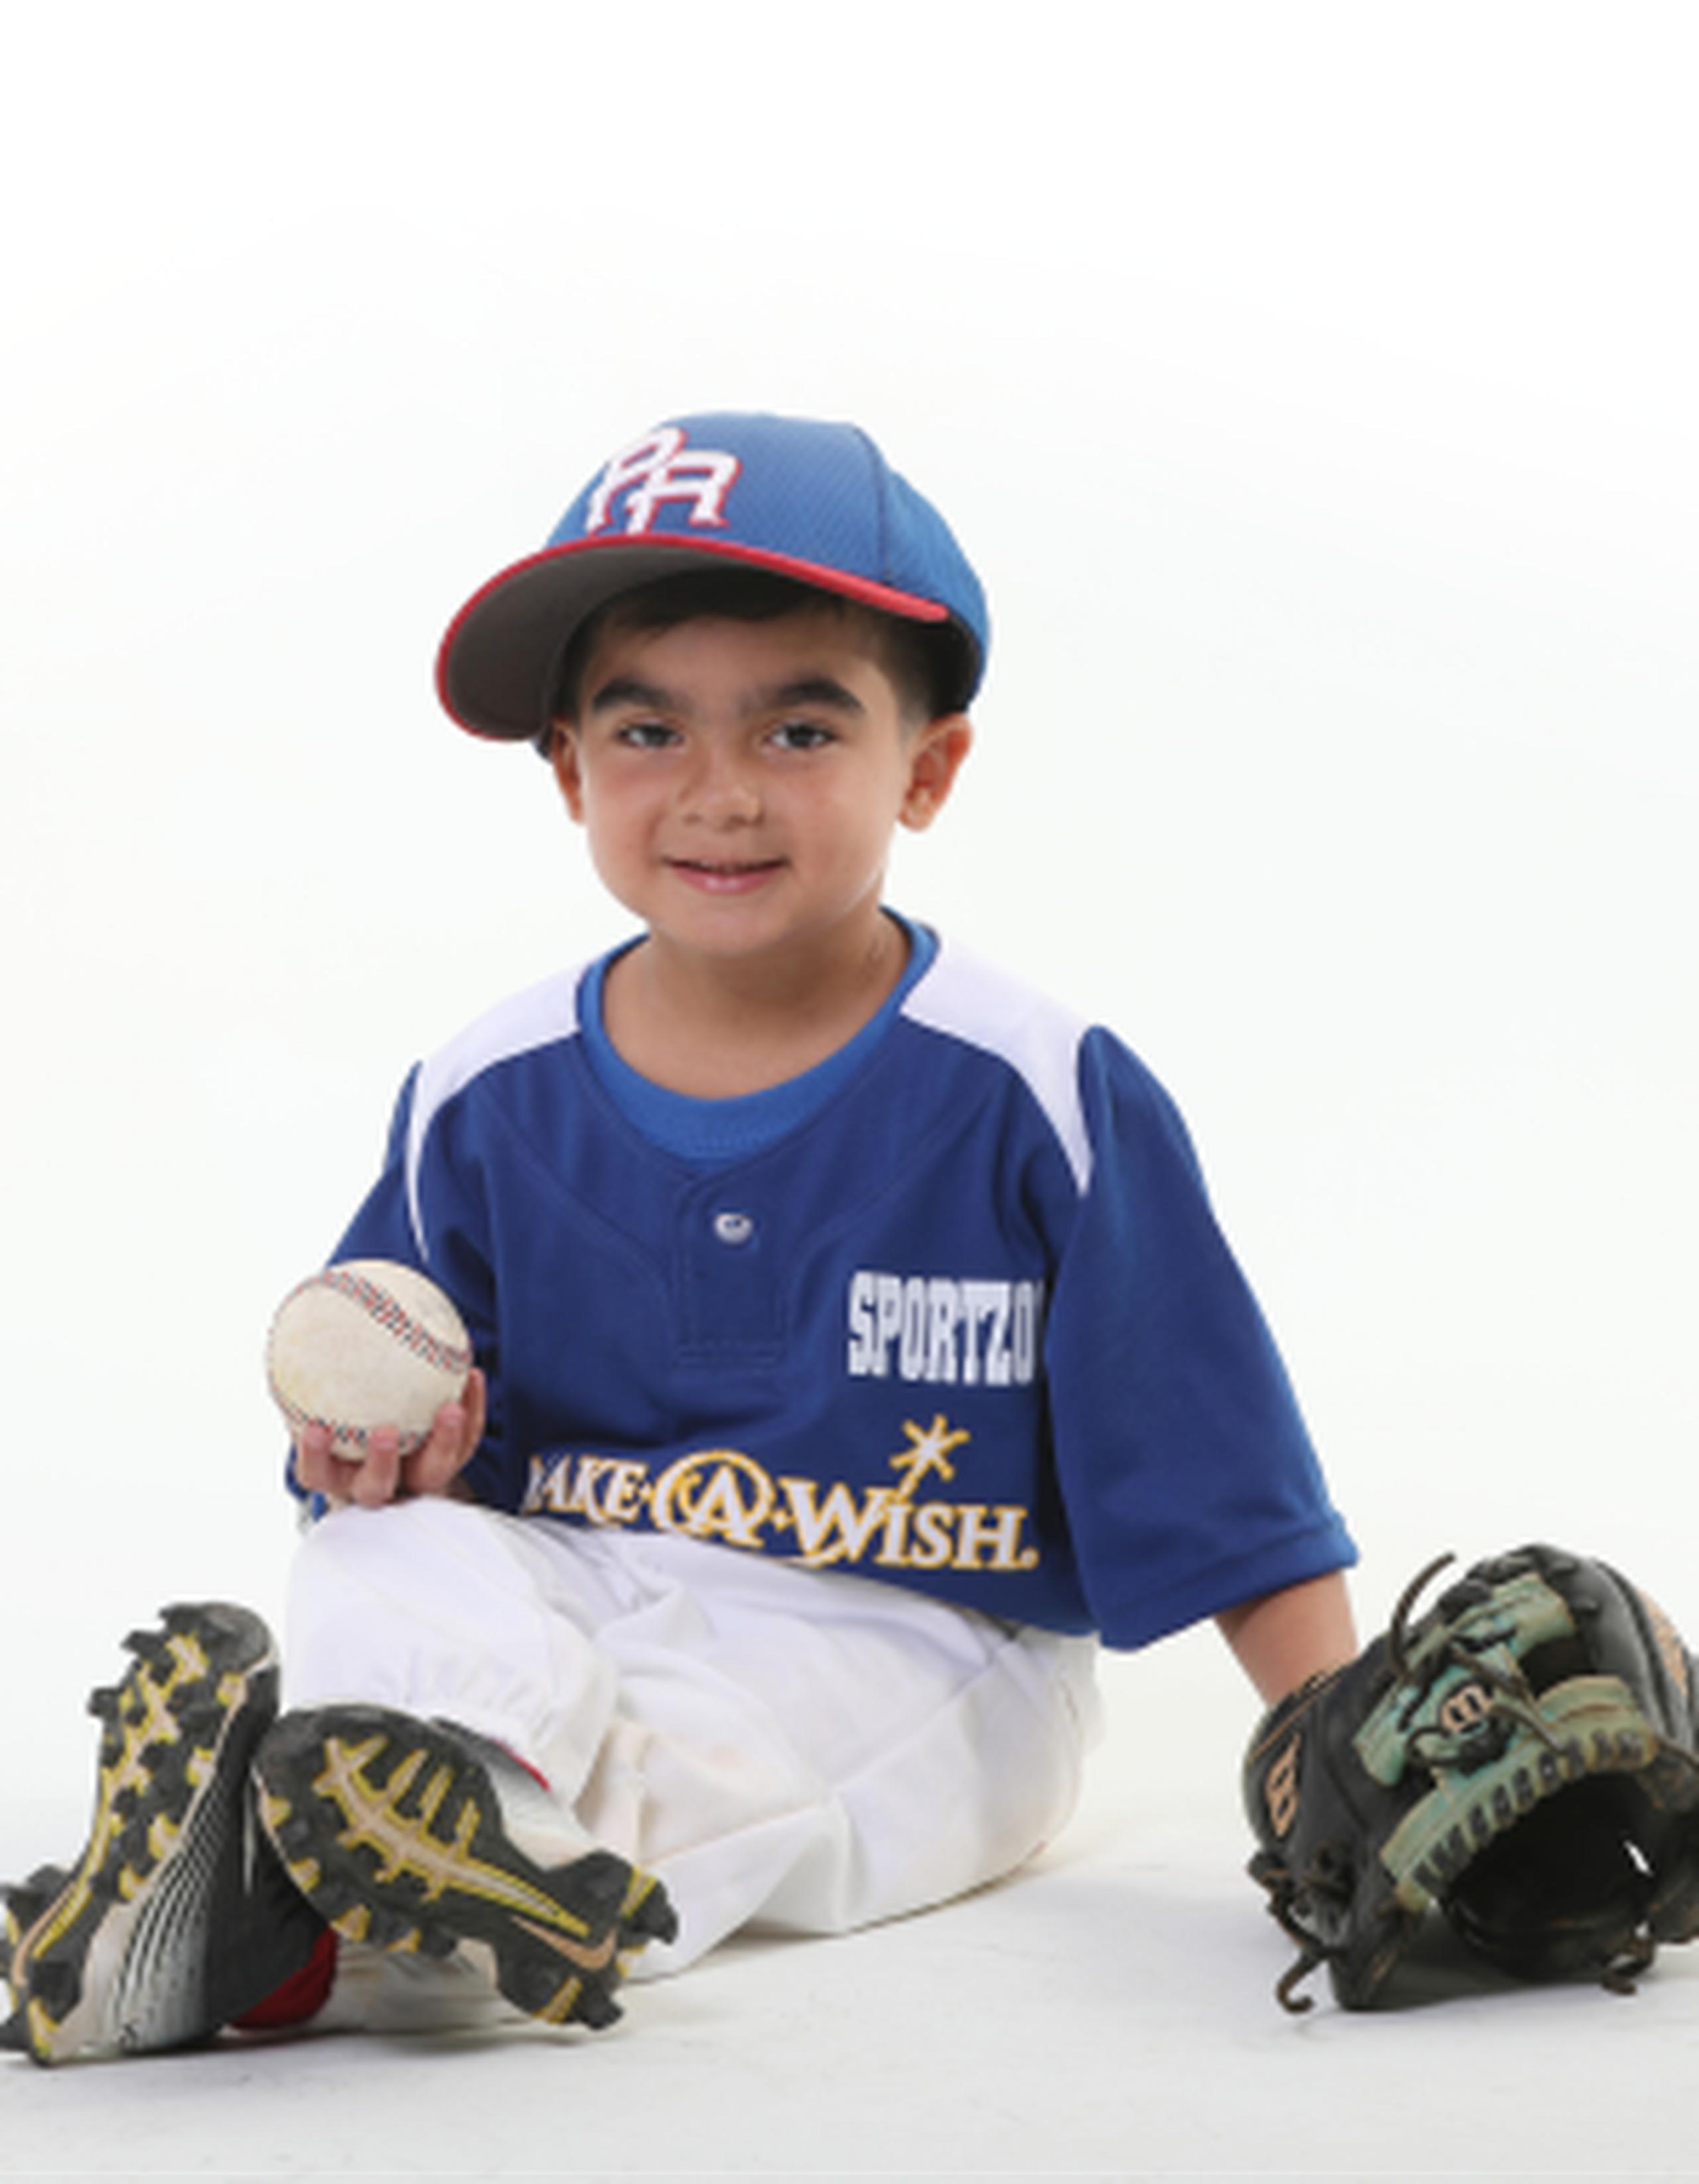 Jugar béisbol es una de las actividades favoritas de Víctor Antonio. (vanessa.serra@gfrmedia.com)